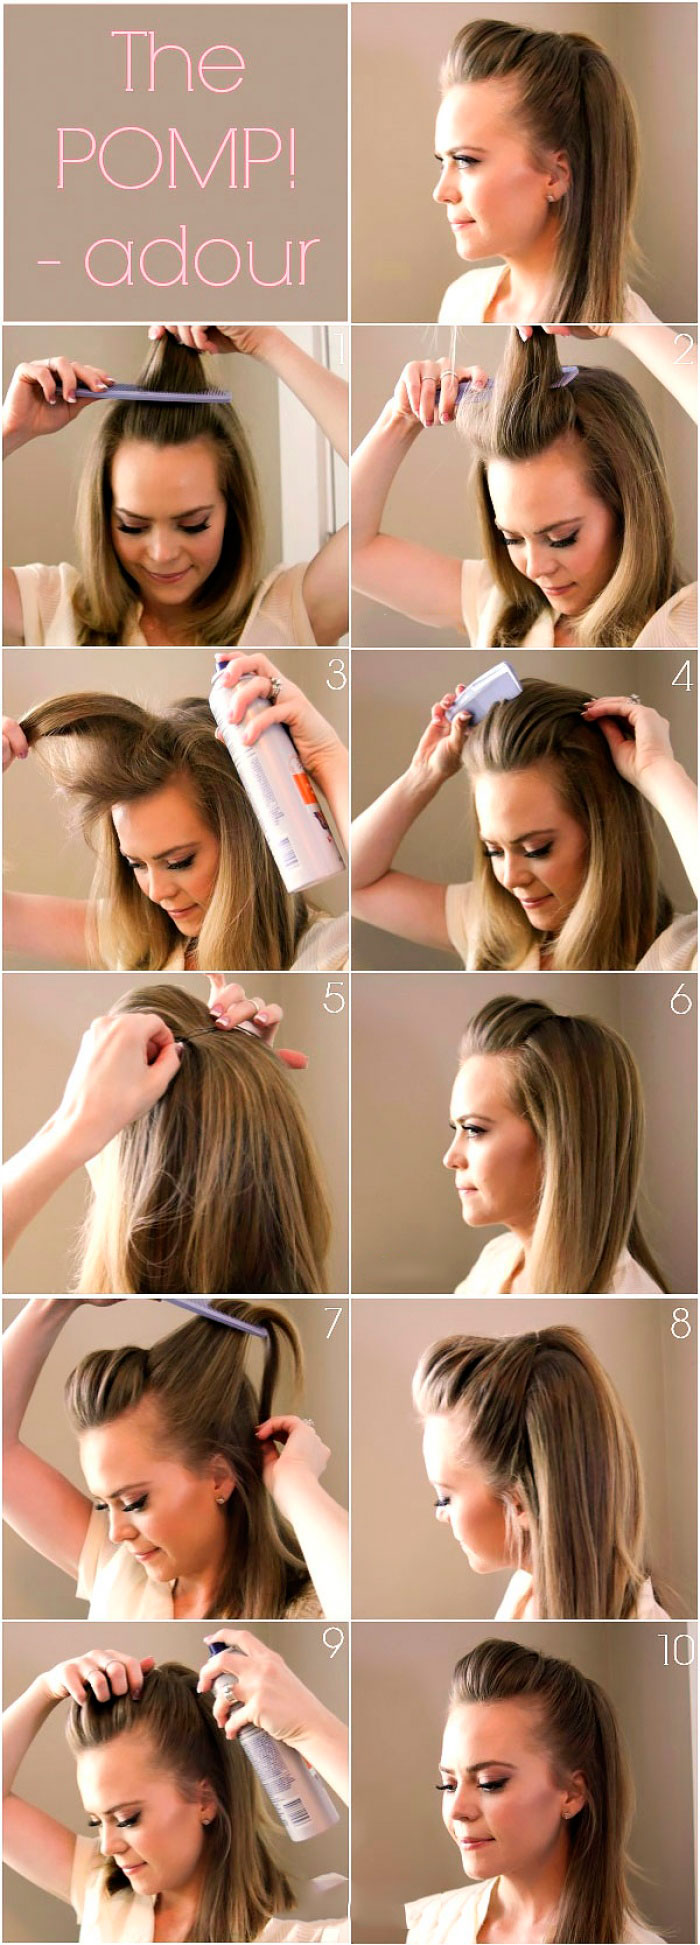 Пошаговая инструкция по выполнению вечерней объемной прически на длинные волосы